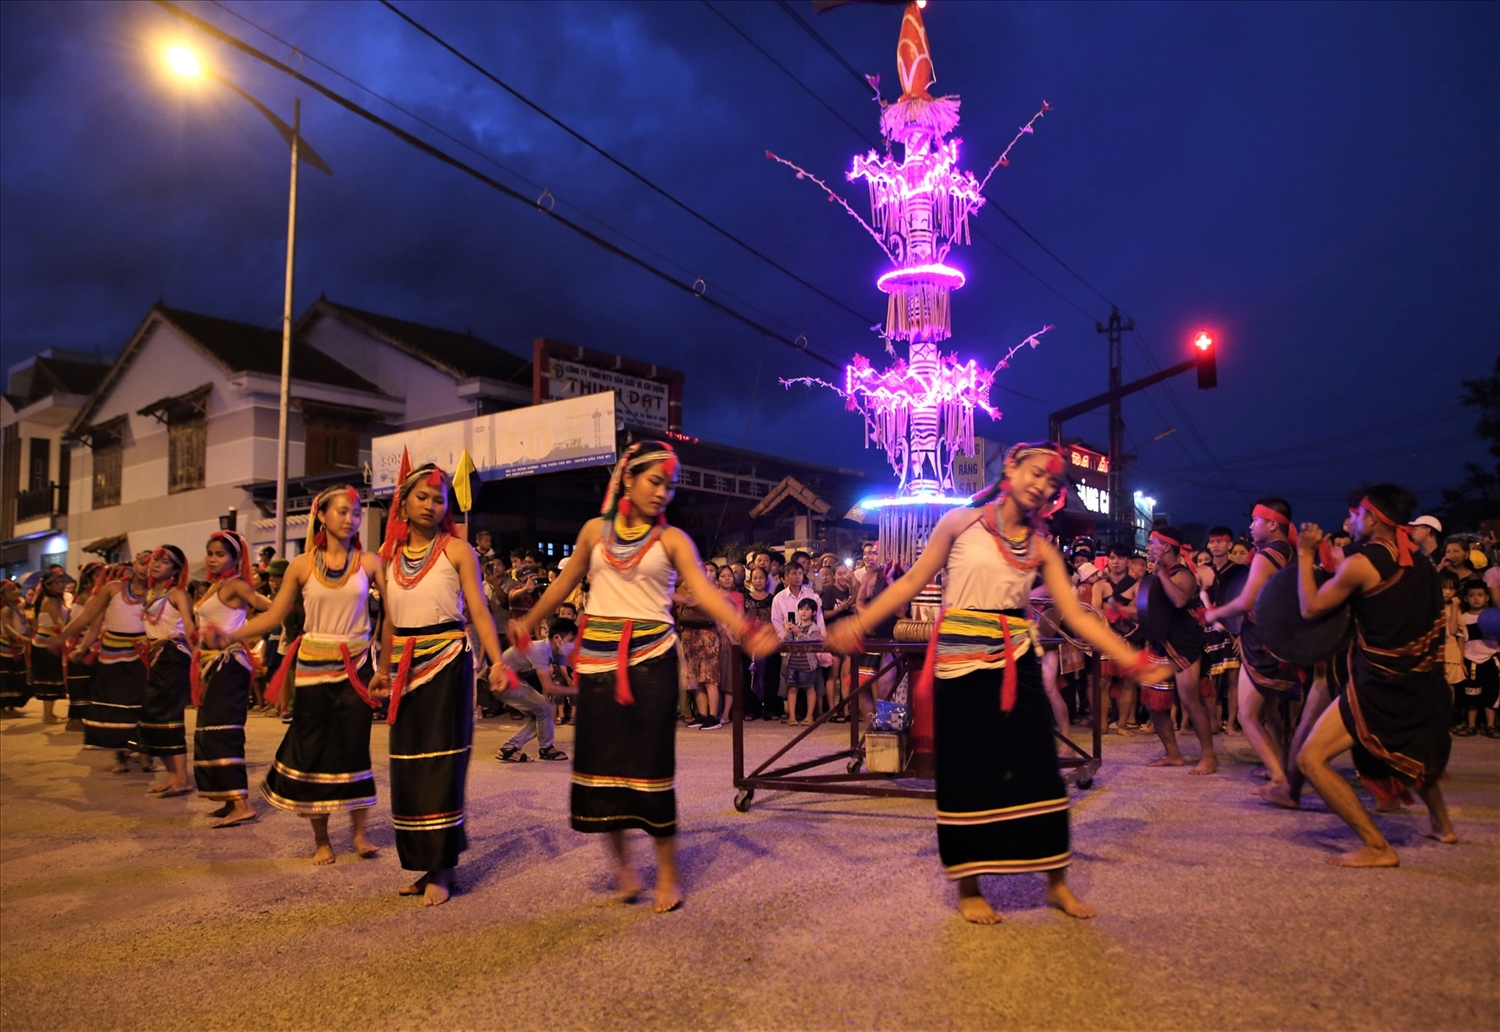 Hàng trăm nghệ nhân các dân tộc cùng rước vật thiêng và biểu diễn sắc màu truyền thống quanh đường phố Trà My. Ảnh: A.N